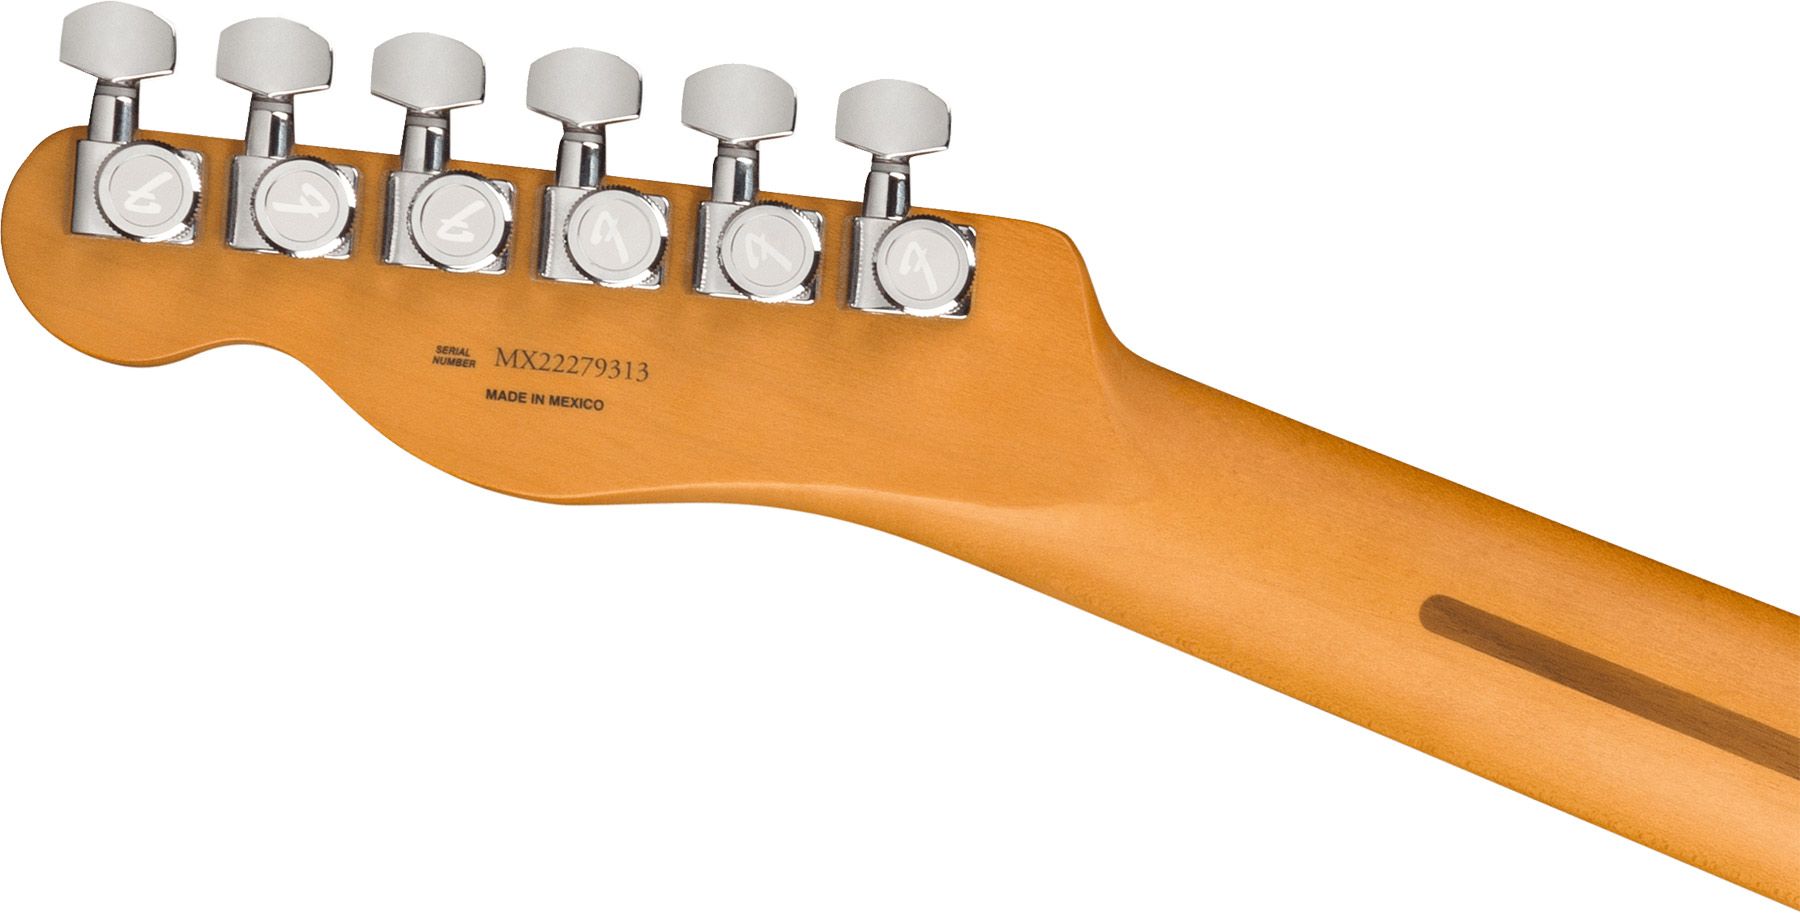 Fender Tele Player Plus Nashville Mex 2023 2s Ht Pf - Sienna Sunburst - Televorm elektrische gitaar - Variation 3